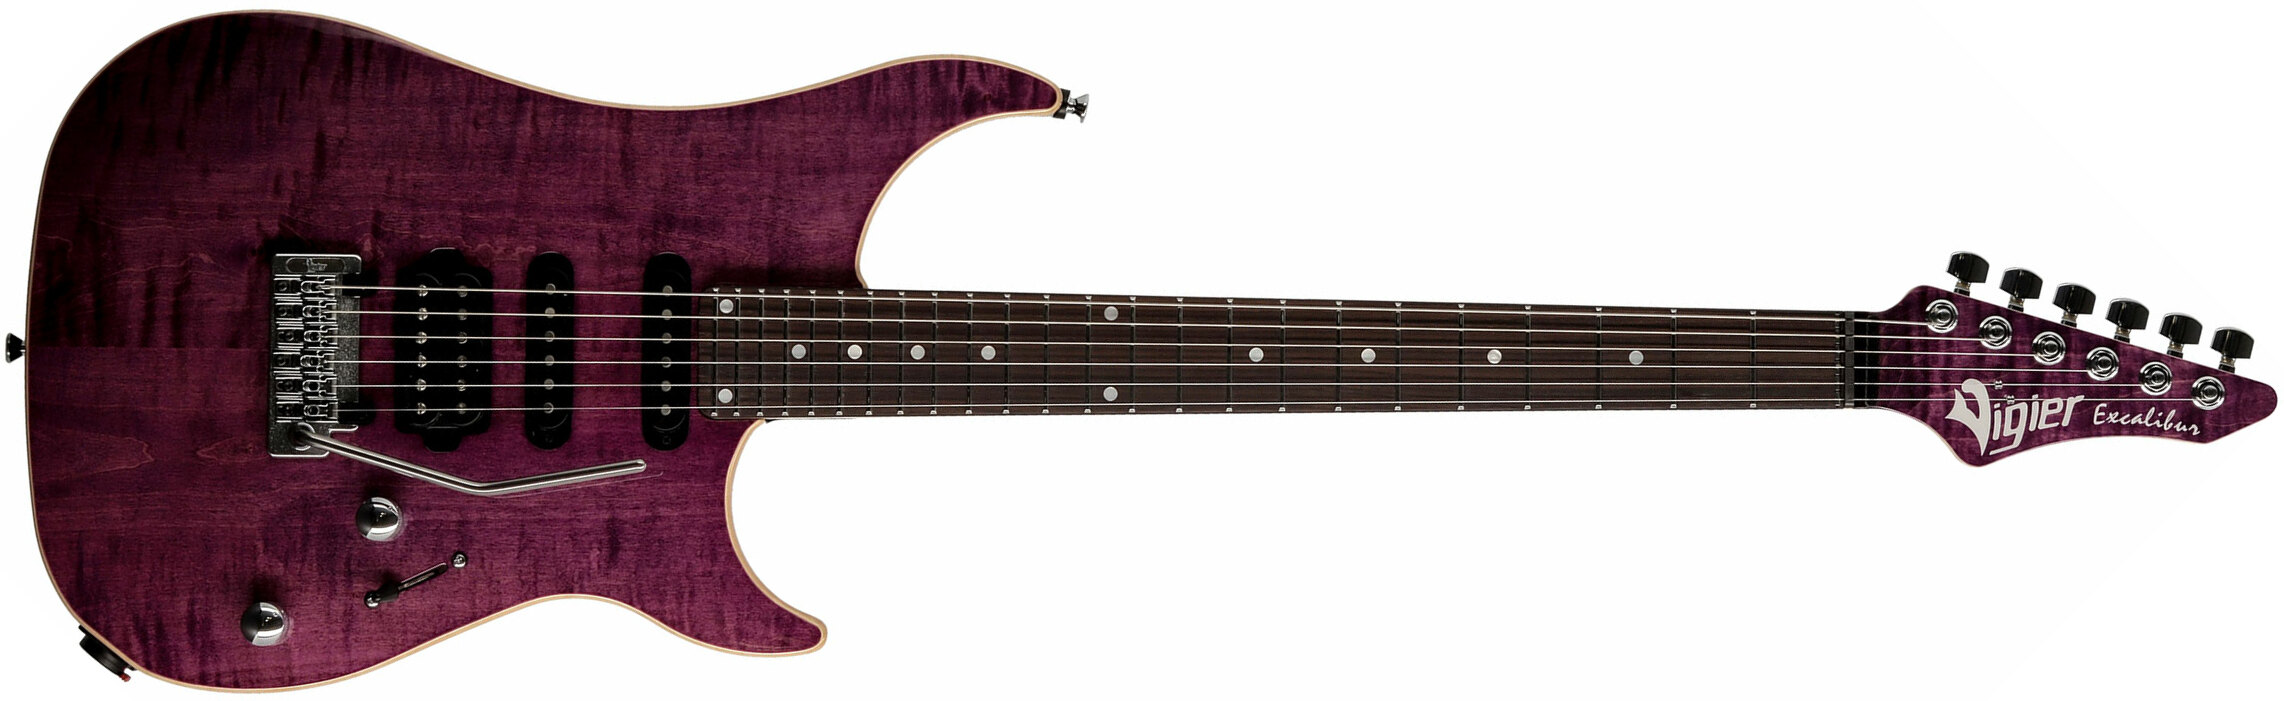 Vigier Excalibur Ultra Blues Hss Trem Rw - Amethyst Purple - Guitarra eléctrica con forma de str. - Main picture